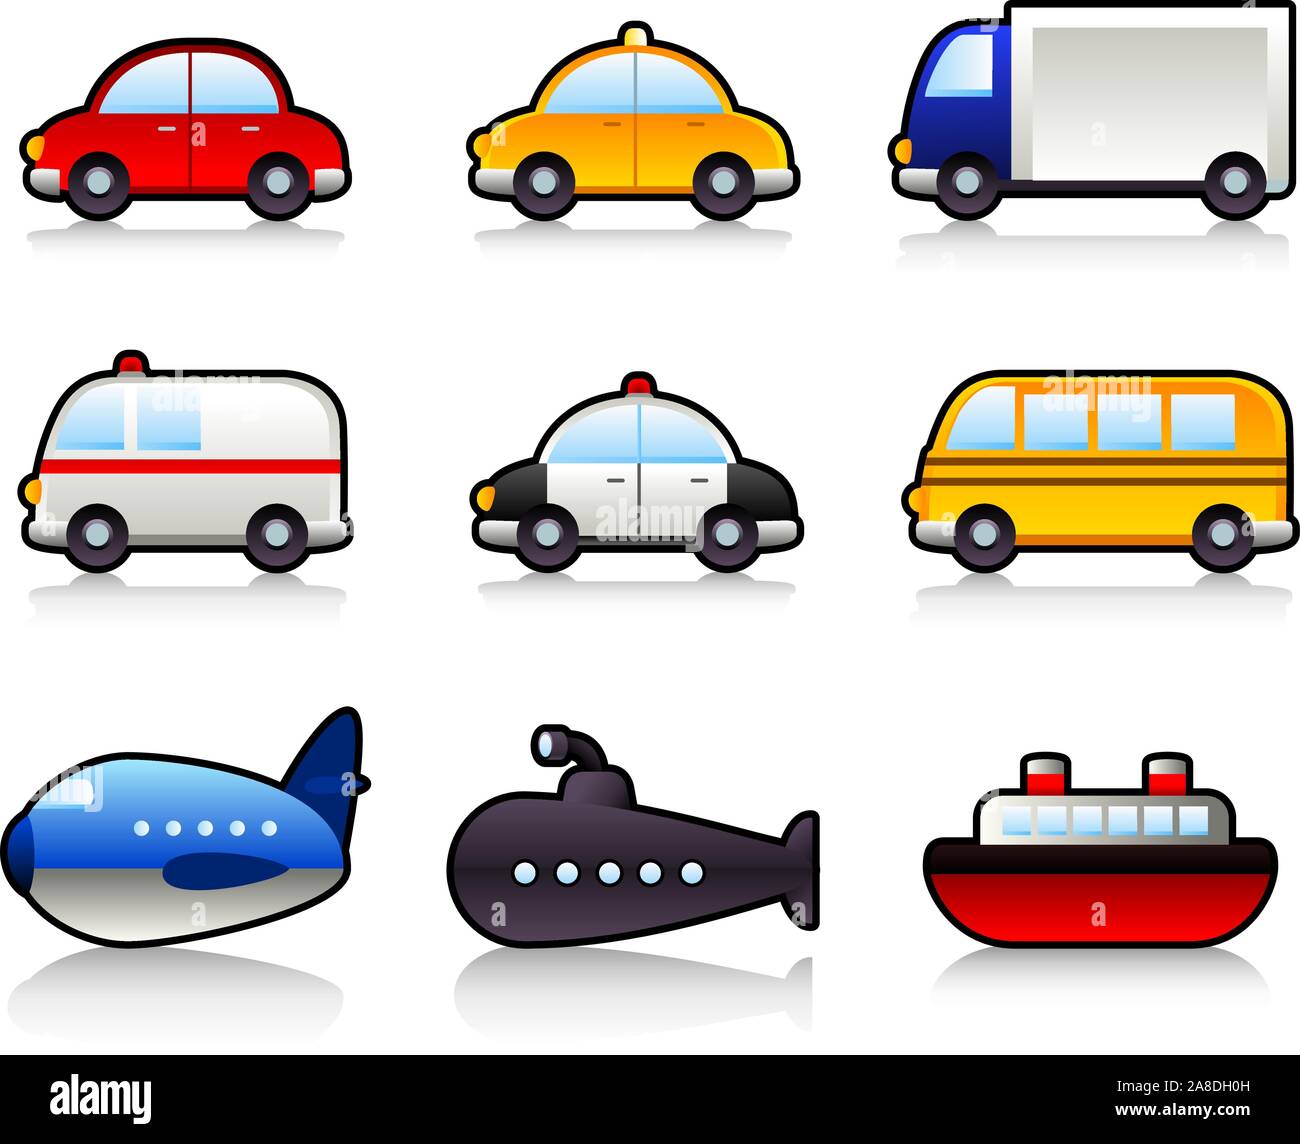 Medios de Transporte: En coche, taxi, camión, camión, autobús, coche de policía, ambulancia, autobús escolar, submarinos, aviones, buques. Ilustración vectorial de dibujos animados. Ilustración del Vector